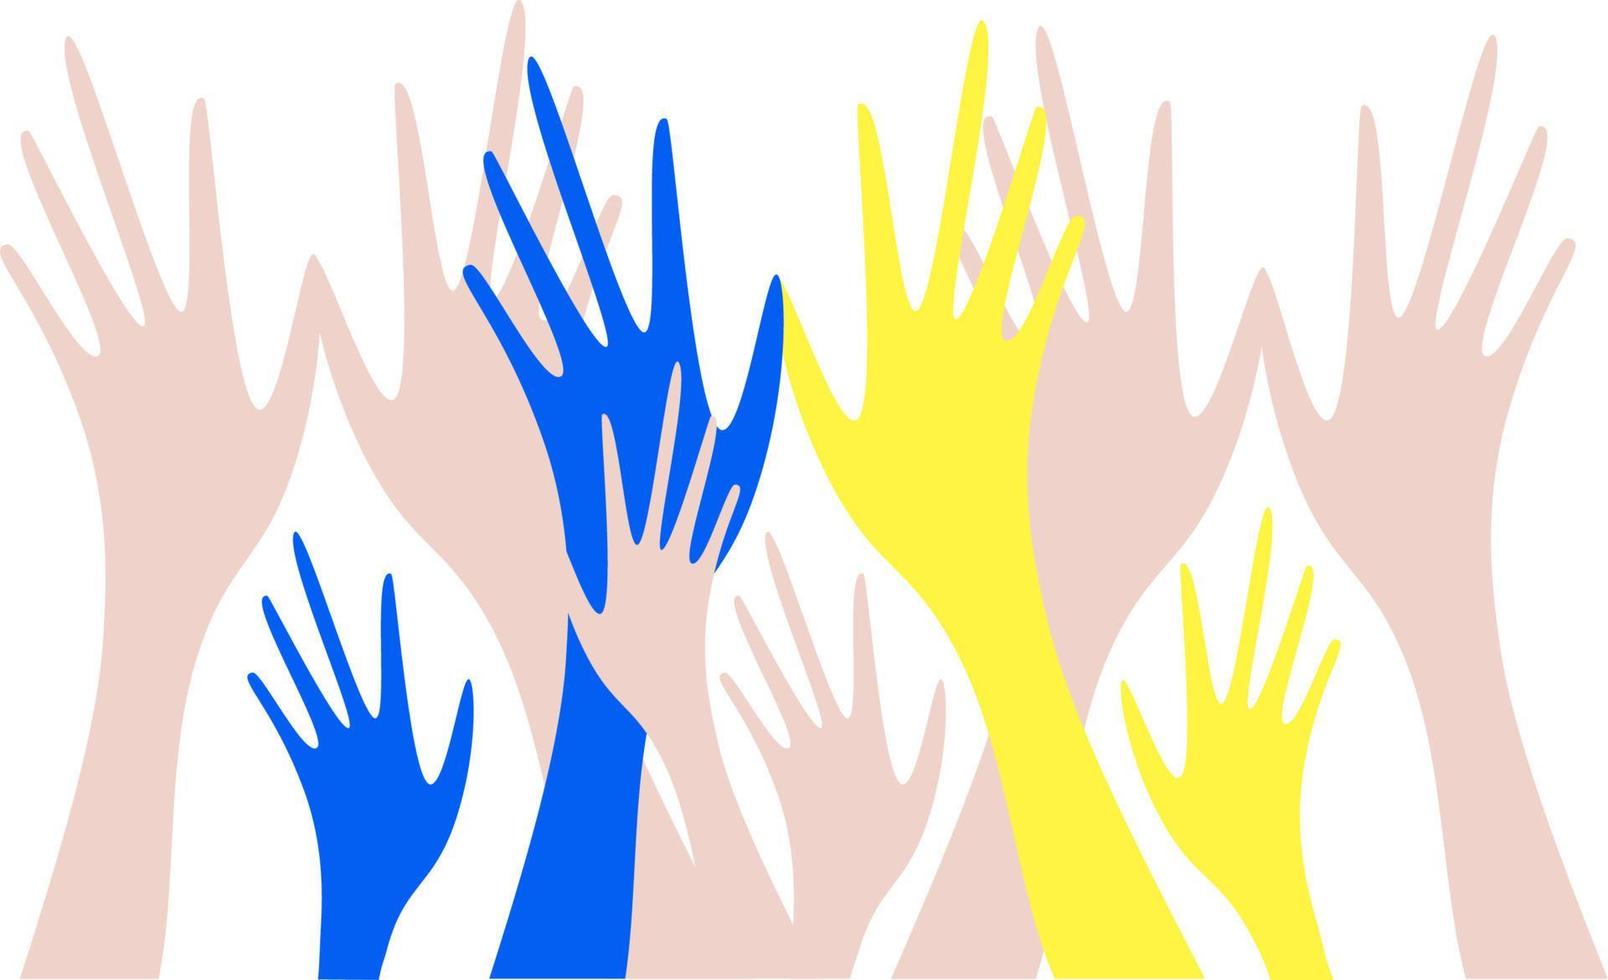 palmas humanas são levantadas. mãos de pele clara e mãos de cores amarelas e azuis. temas de nacionalidade e voluntariado. ajuda e escolhas. vetor